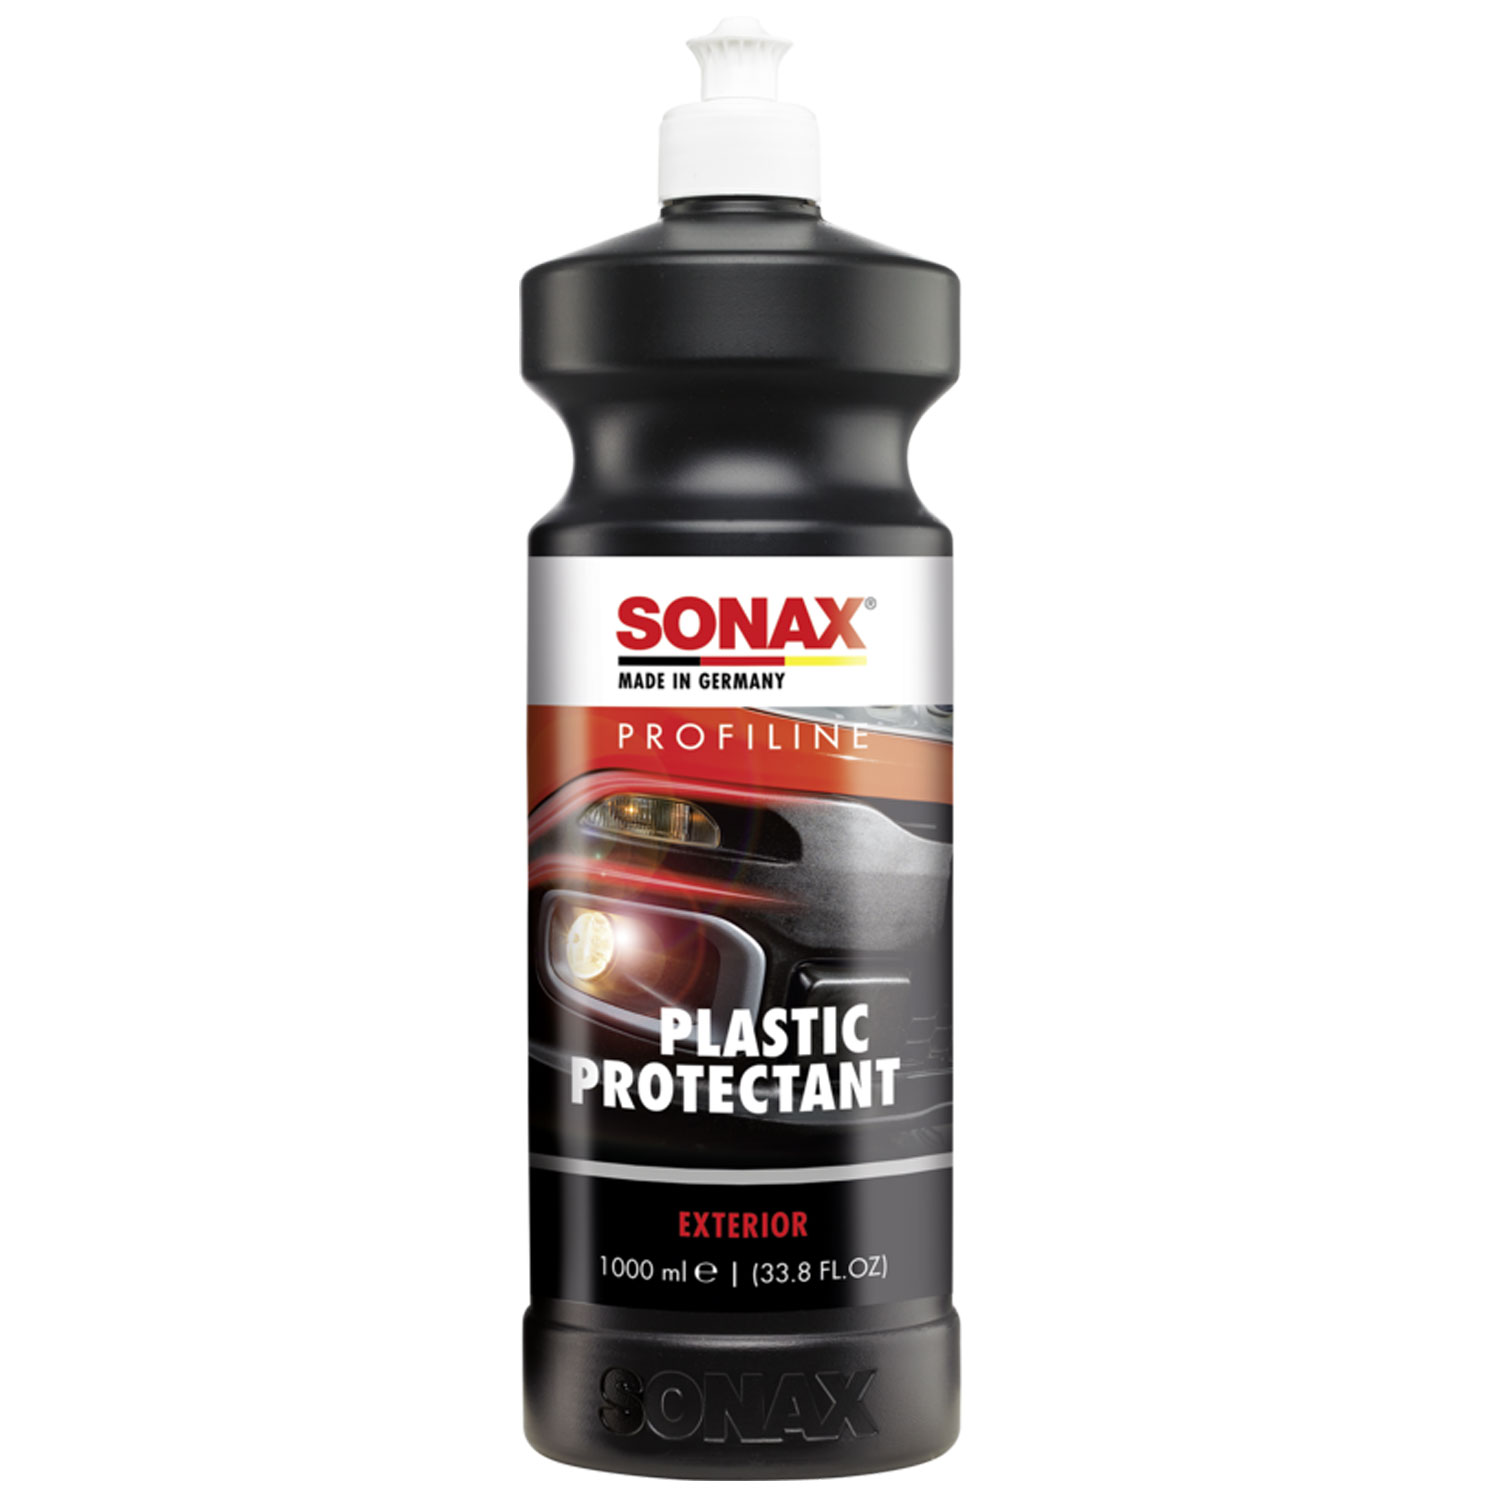 SONAX 1000ml Profiline Plastic Protectant